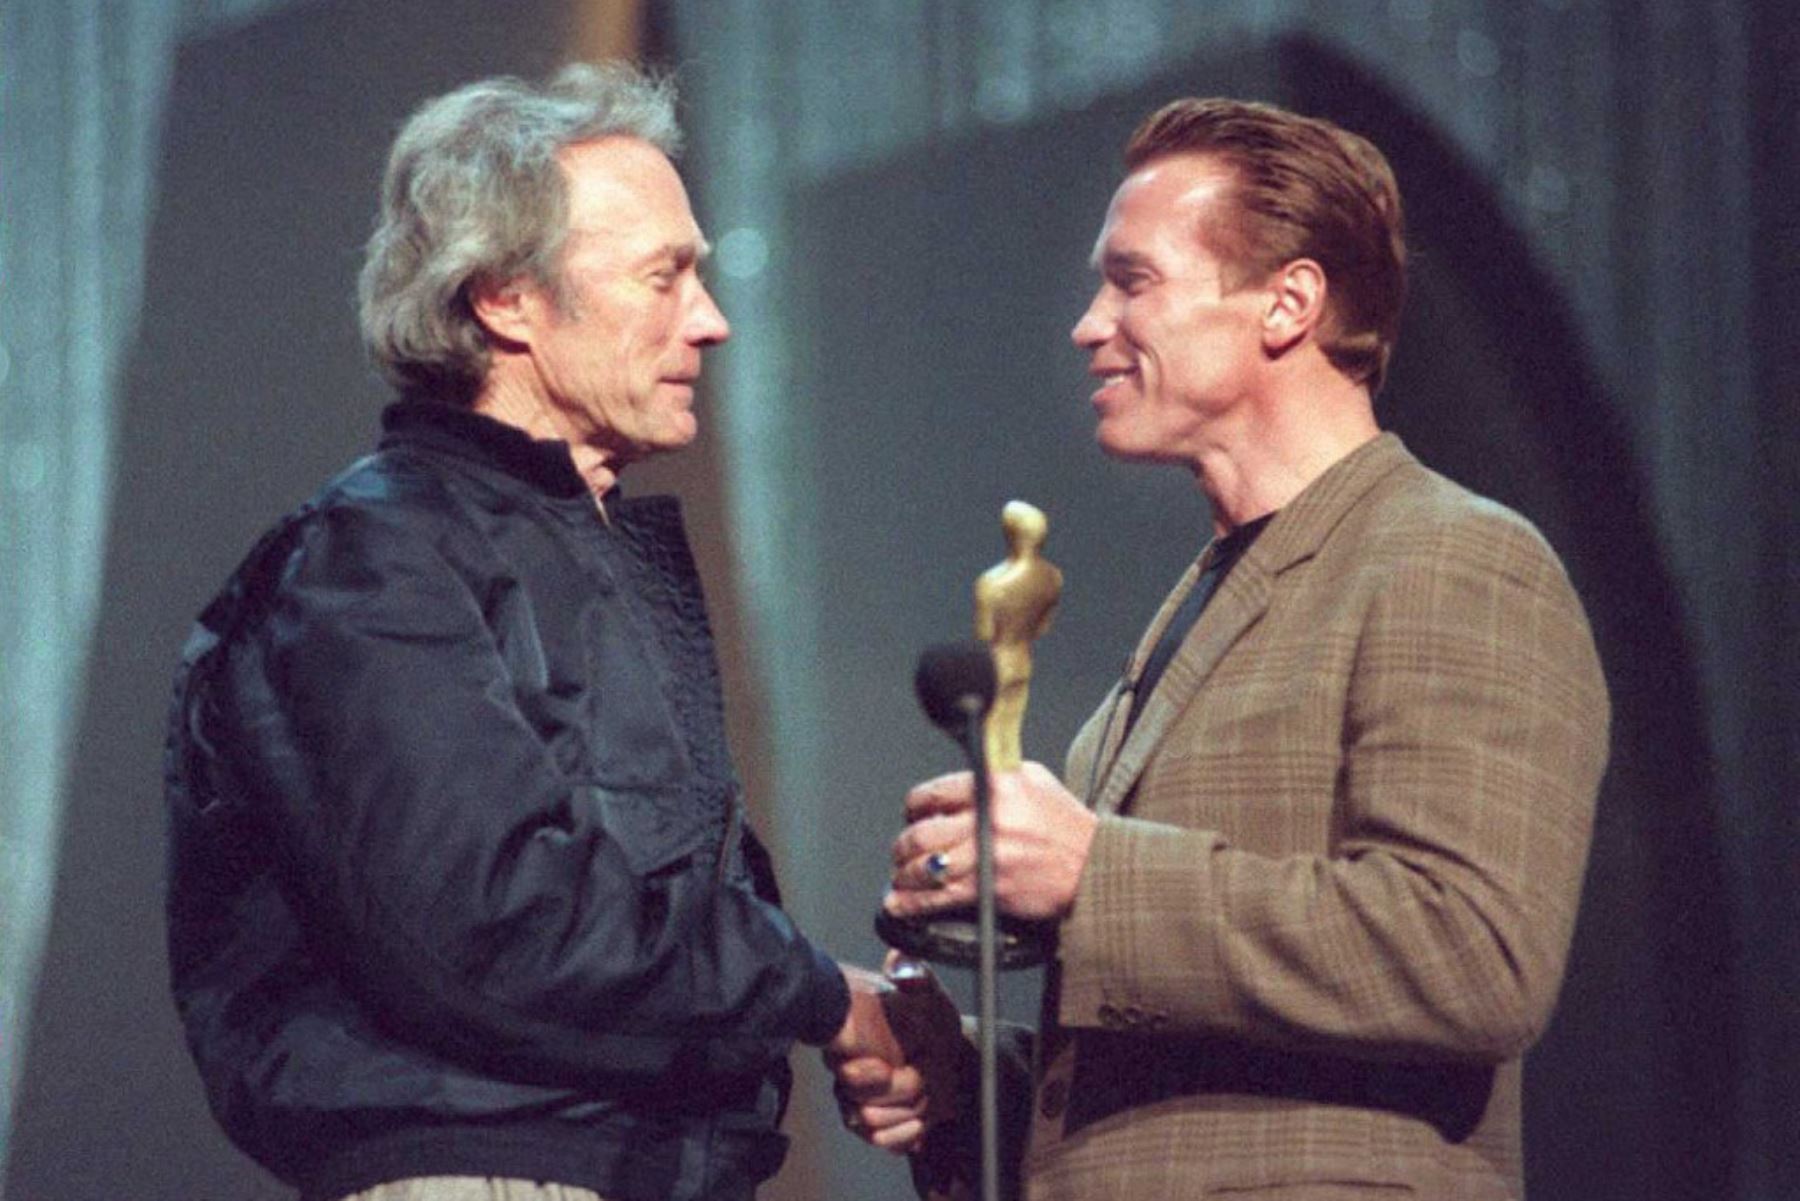 Los actores Arnold Schwarznegger y Clint Eastwood hacen una presentación en el escenario del Auditorio Shrine el 24 de marzo de 1995 en preparación para la 67 Entrega Anual de los Premios de la Academia. Foto: AFP